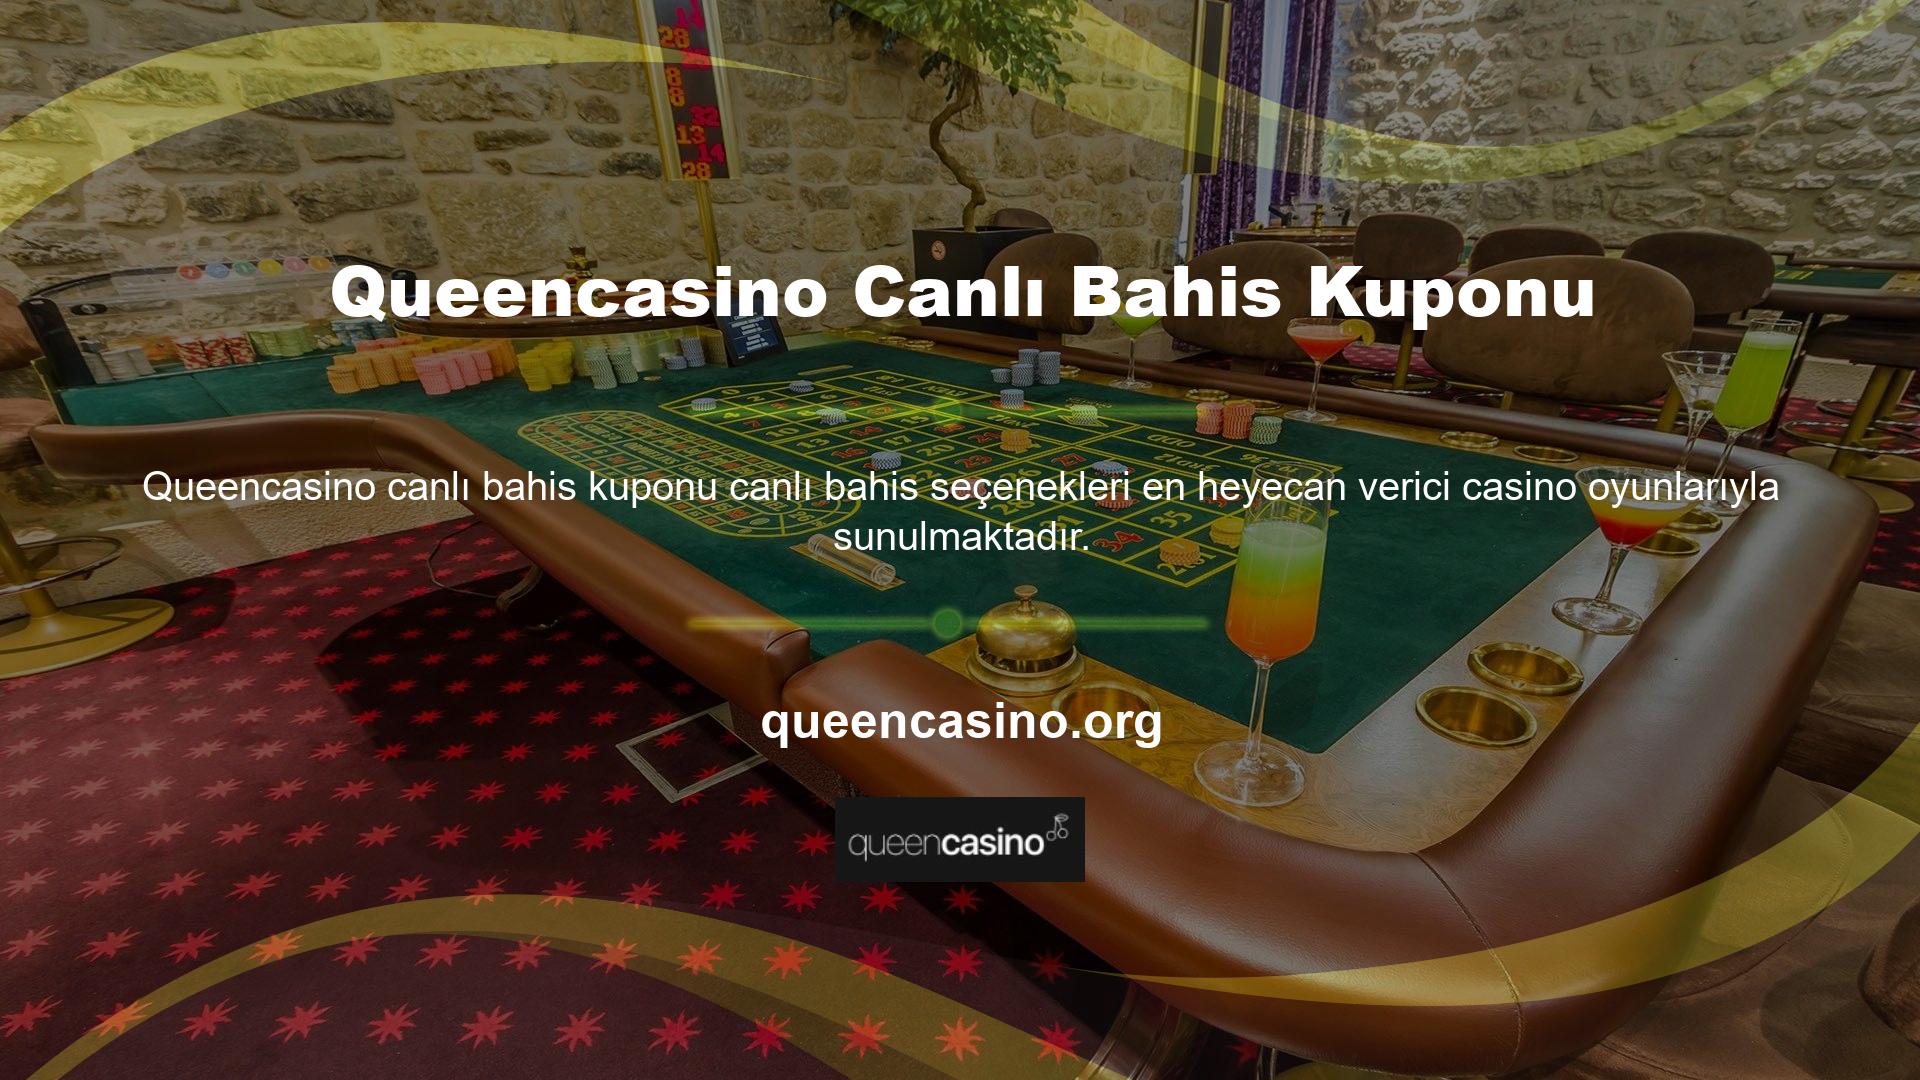 Queencasino canlı bahis hizmeti, kullanıcıların heyecan verici, yüksek bahisli bir maceraya katılmasına olanak tanır